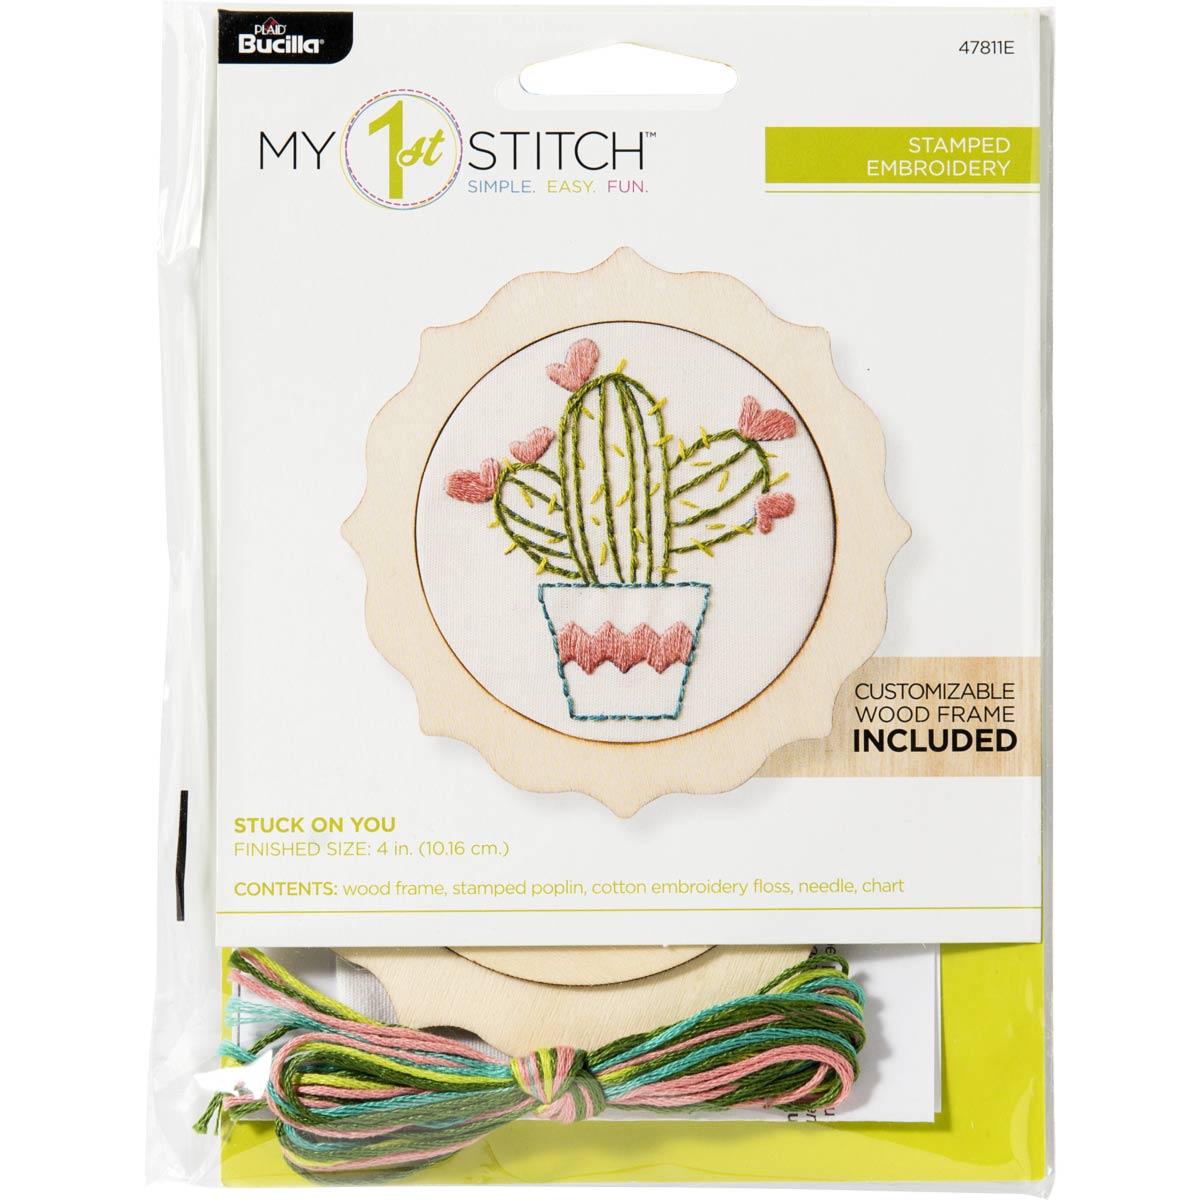 Bucilla ® My 1st Stitch™ - Stamped Cross Stitch Kits - Stuck on You - 47811E